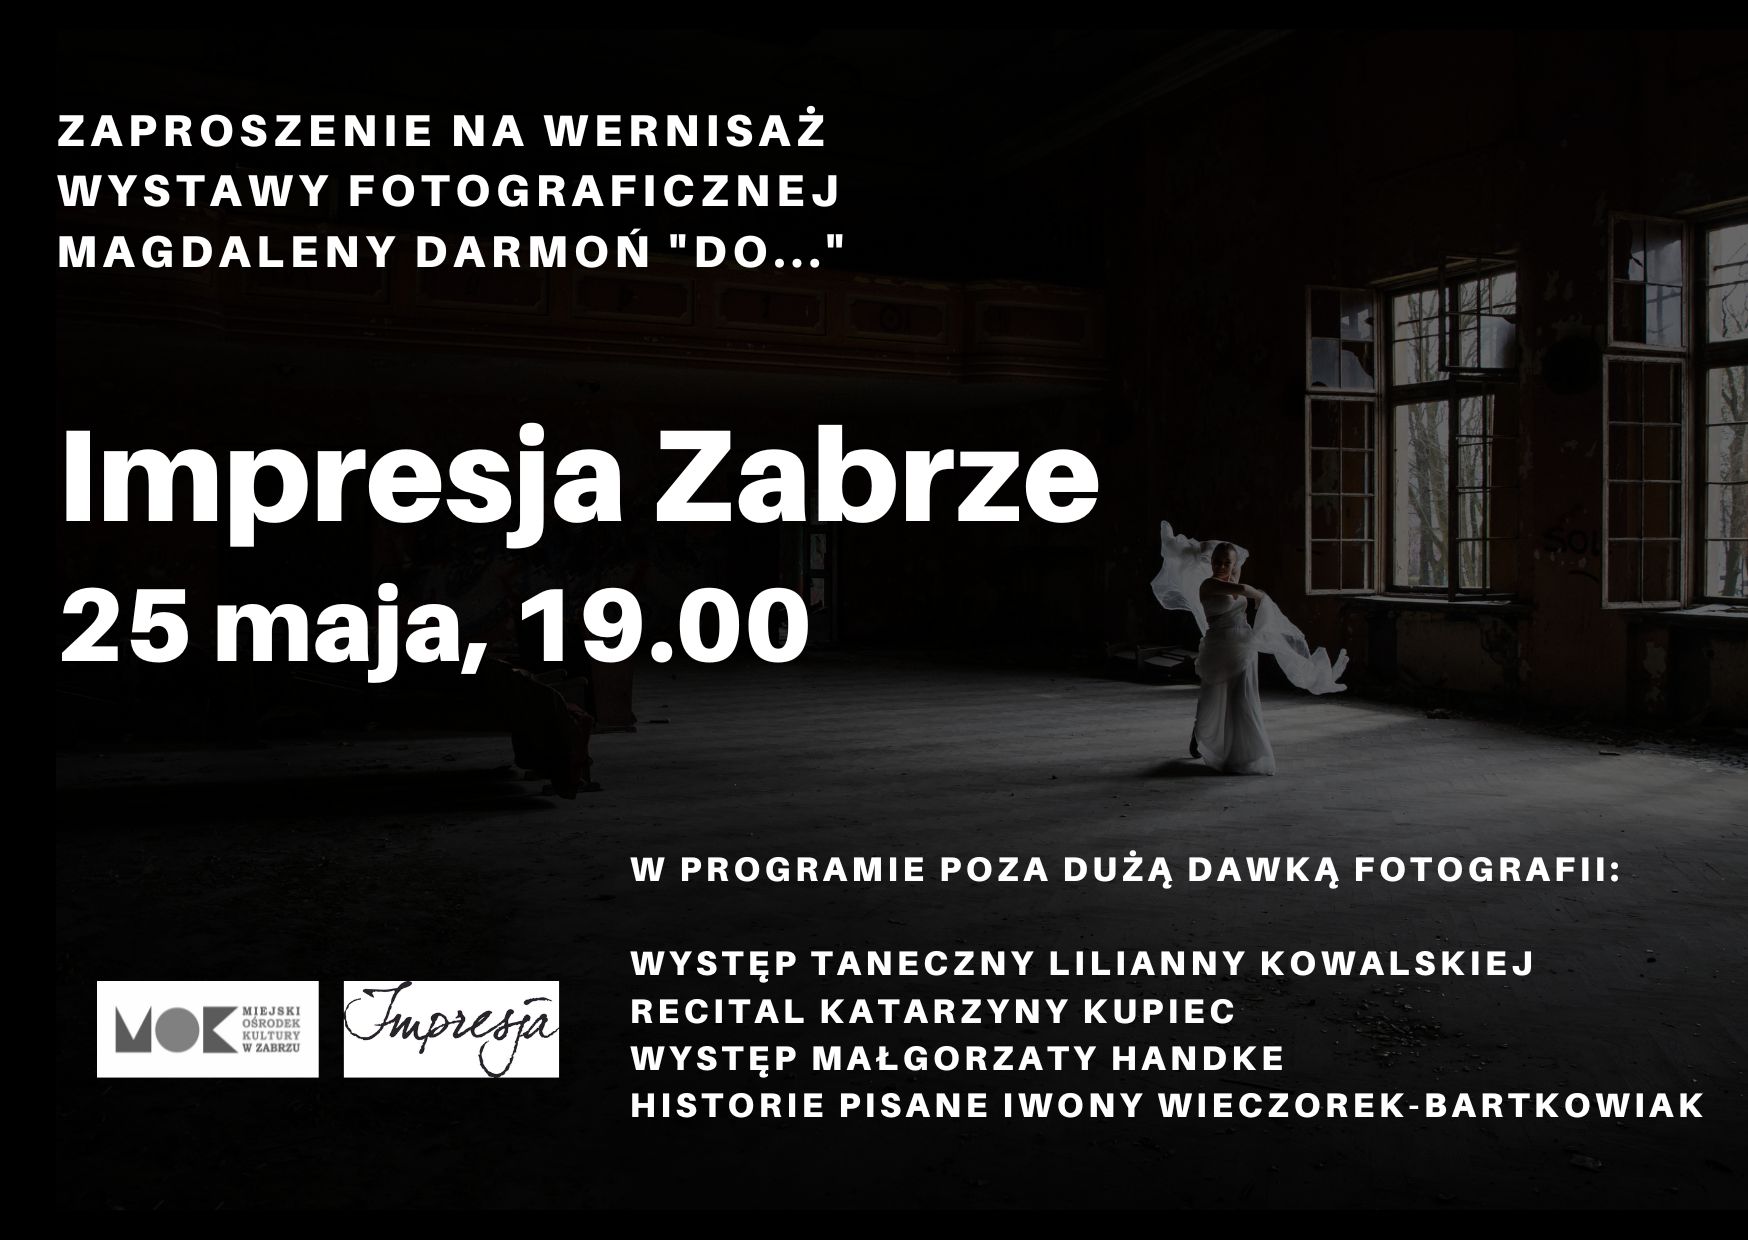 baner promujący wystawę fotografii Magdaleny Darmoń przedstawiający tancerkę